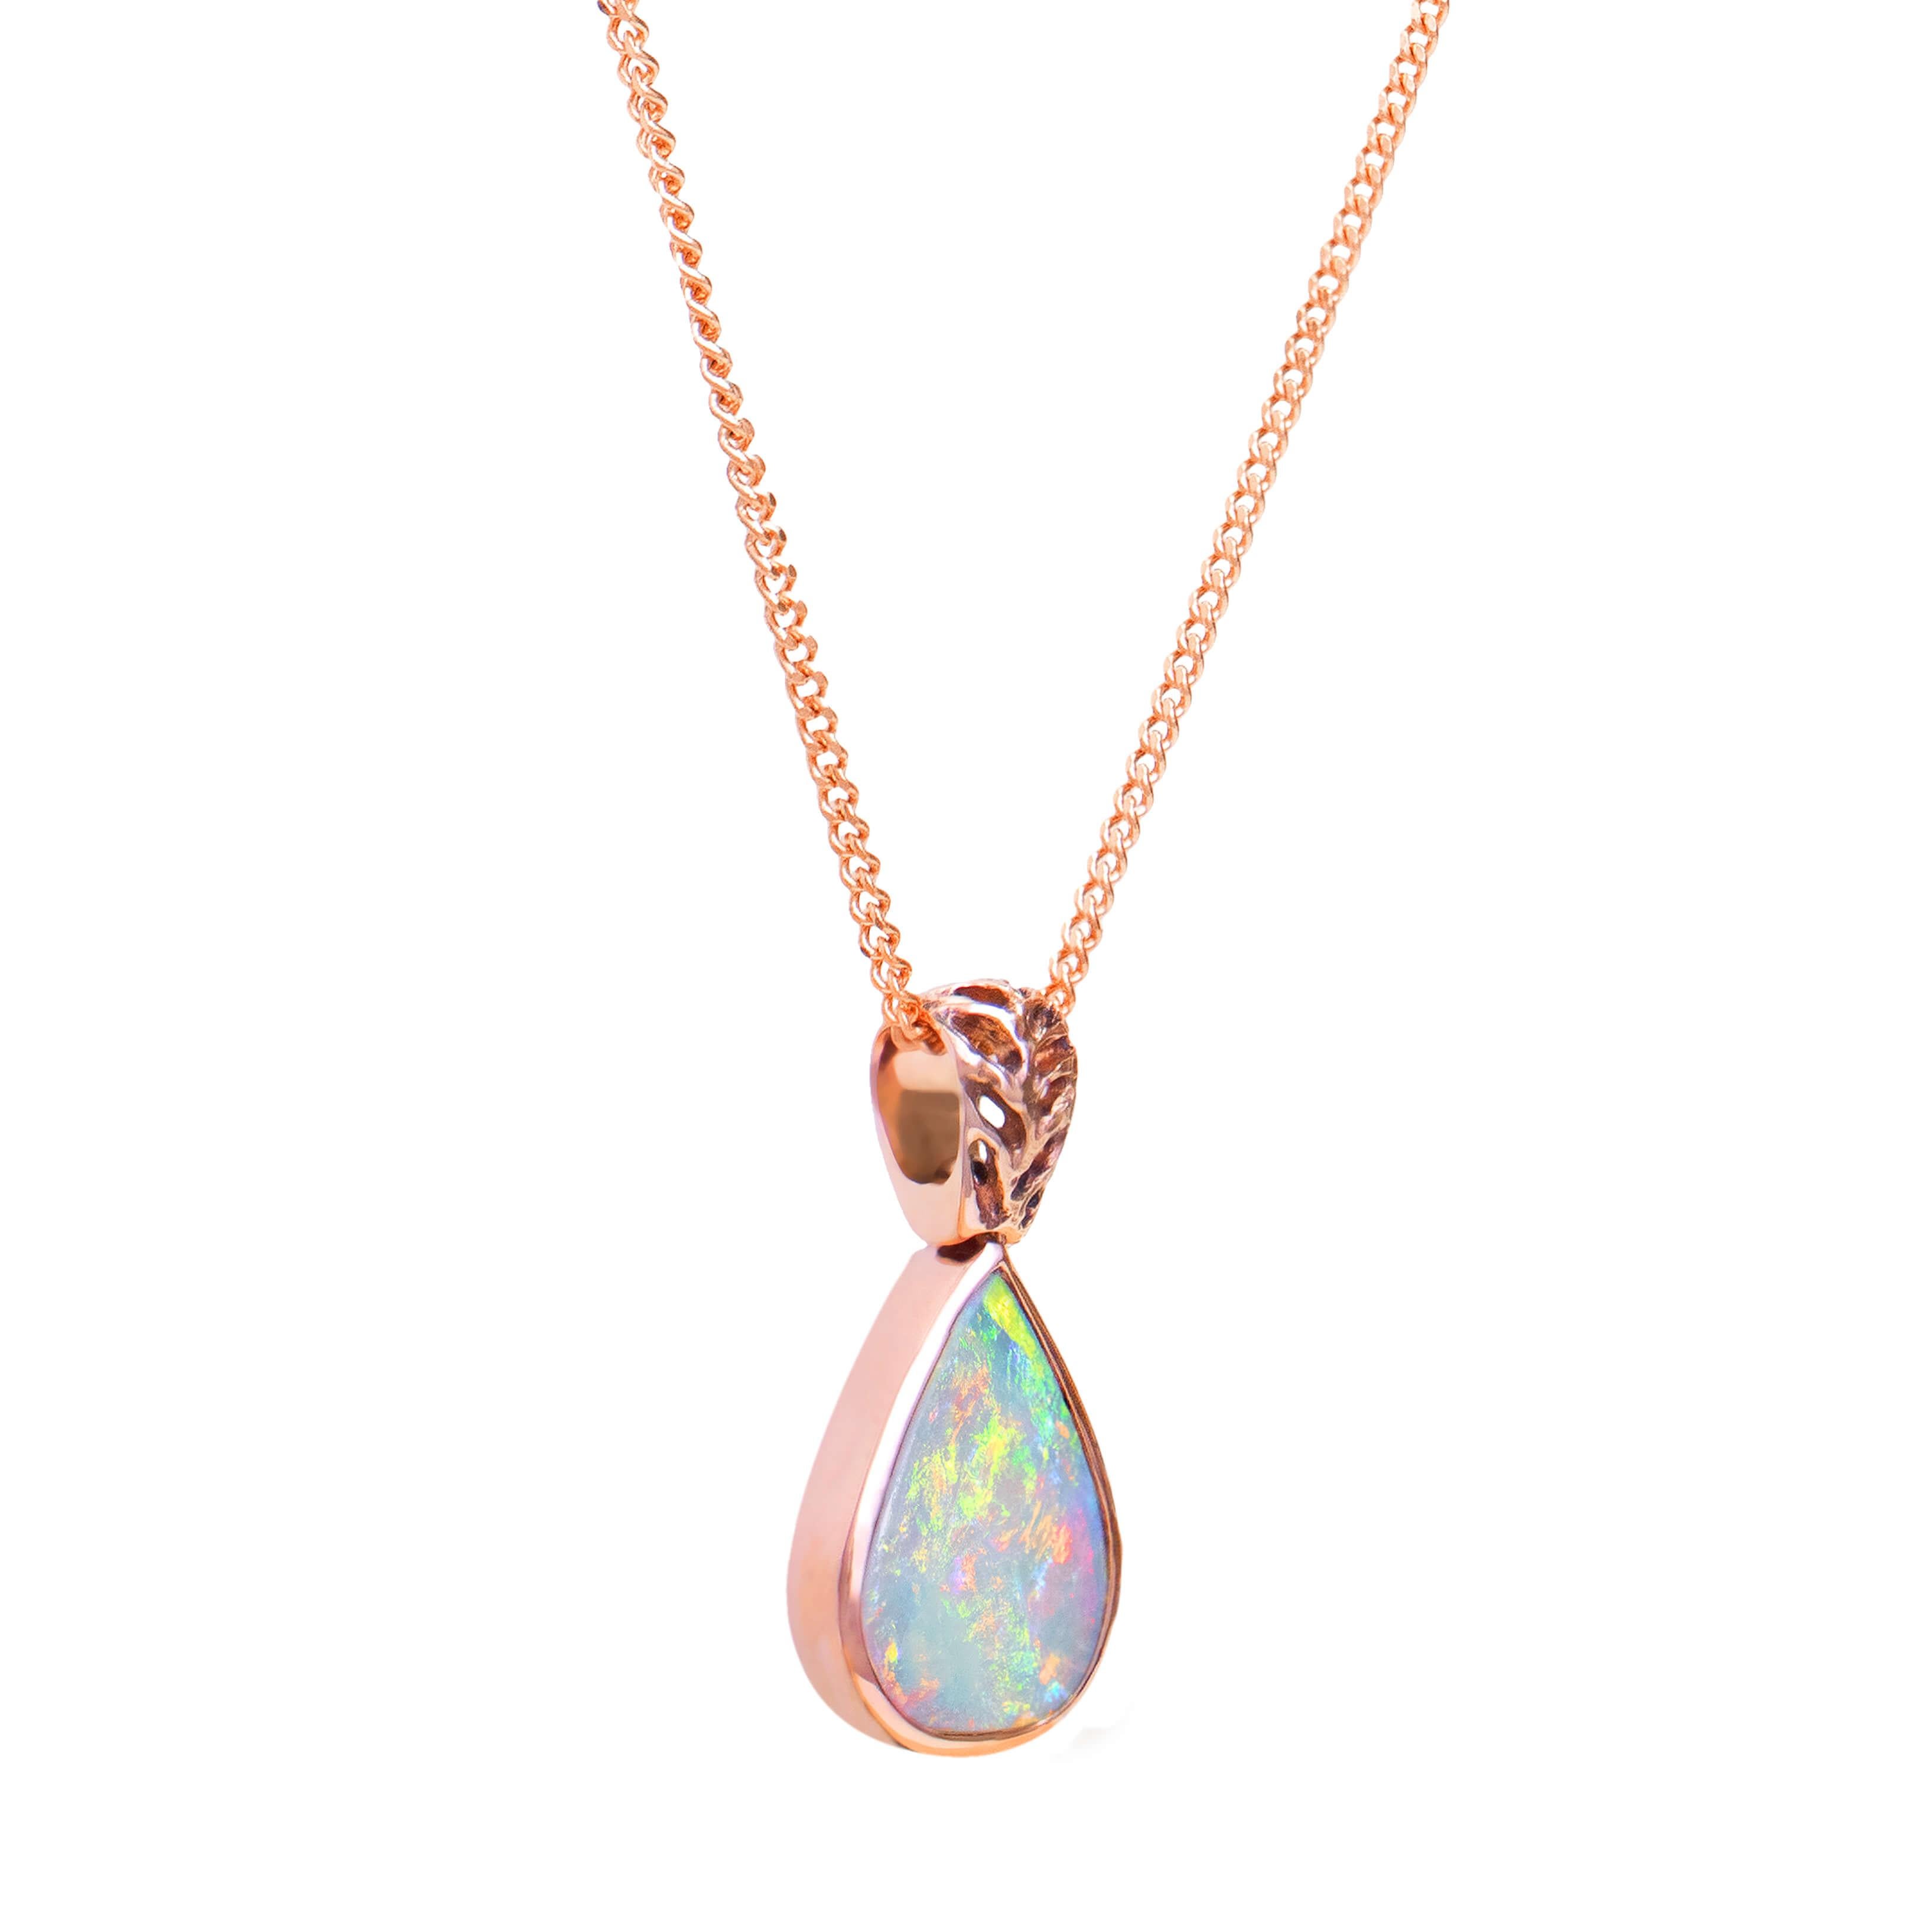 Un très joli collier avec une opale en cristal tout aussi belle. Ce collier en or rose massif 18 carats est orné en son cœur d'une opale de cristal australienne. La monture comprend également une chaîne en or rose massif de 18 carats.